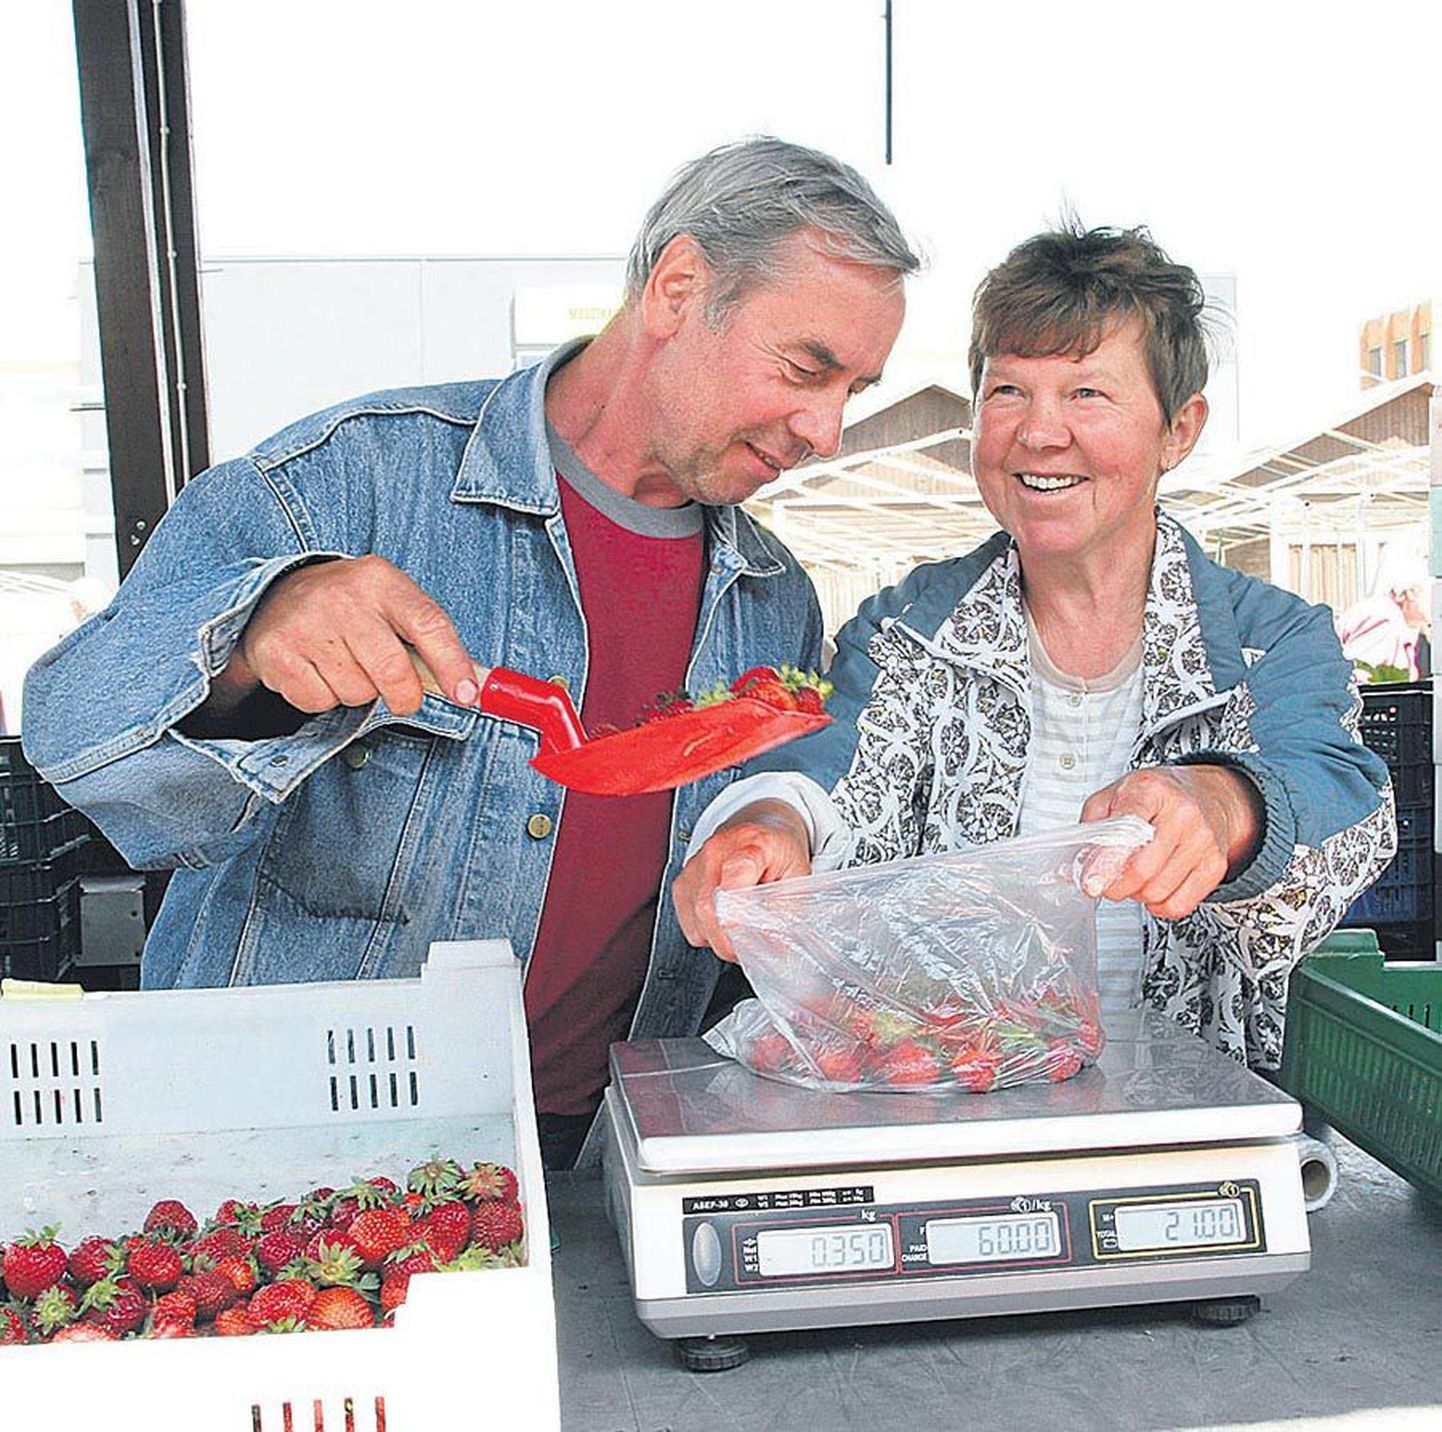 Neljapäeval Viljandi turul maasikaid pakkunud Marika ja Heino Ilisson Valgamaalt Põdrala vallast ütlesid, et
inimeste ostuhuvi on suur.